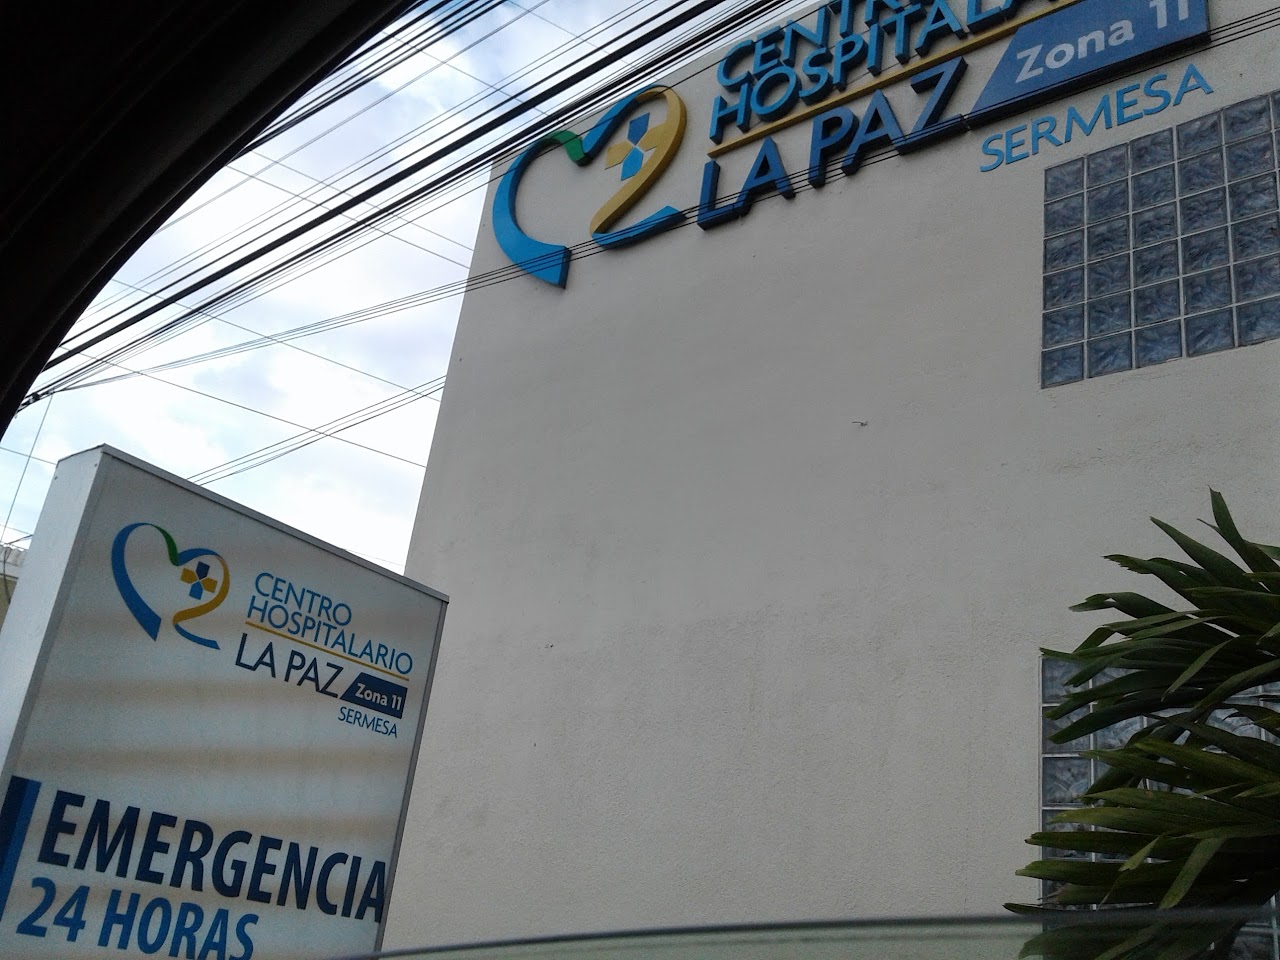 Photo of La Paz Hospital Guatemala City COVID Testing at Guatemala City, Guatemala